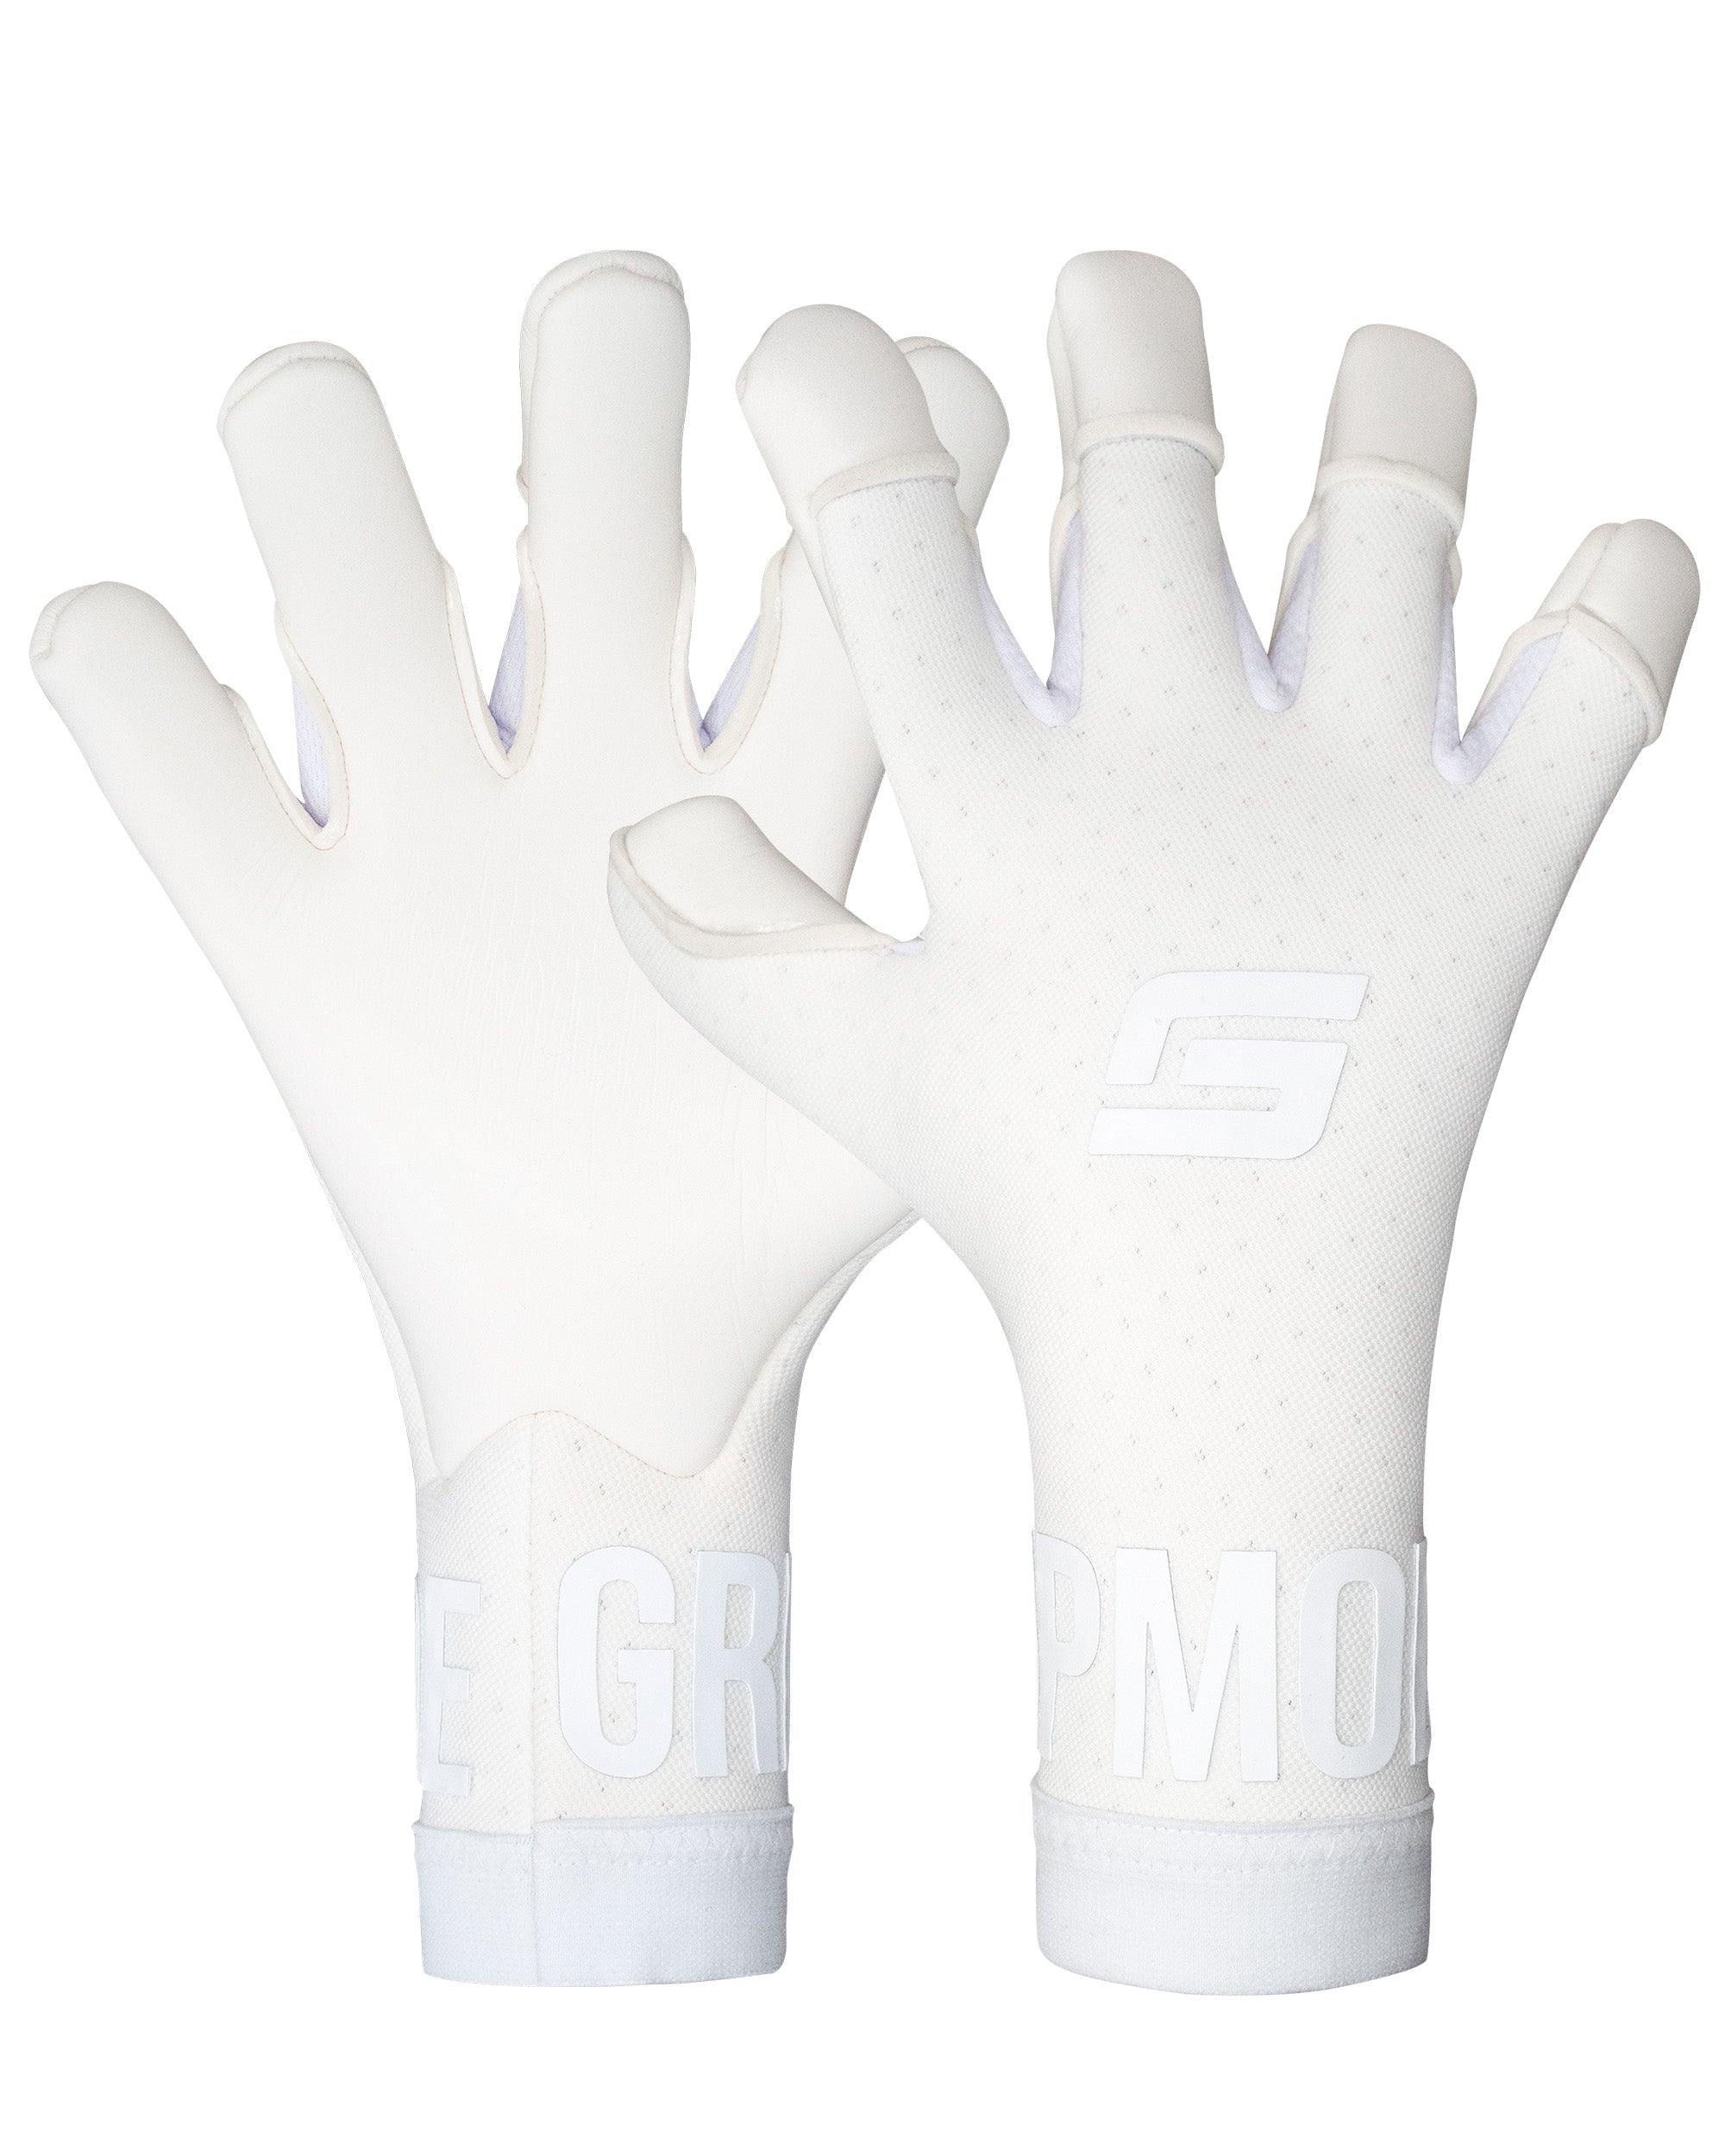 Air Whiteout Fingertip Goalkeeper Gloves